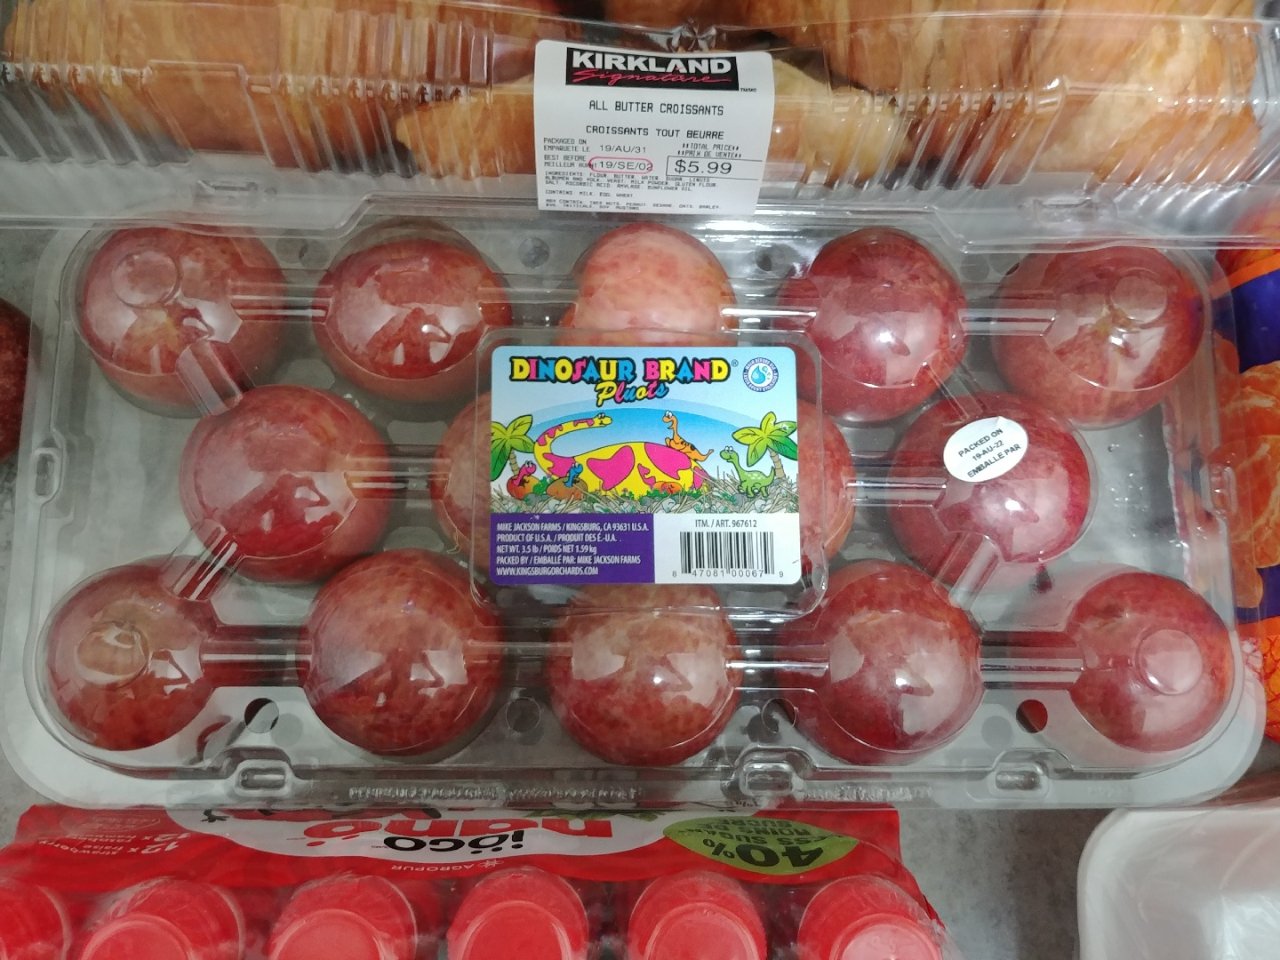 Costco夏天必买之水果---恐龙蛋...